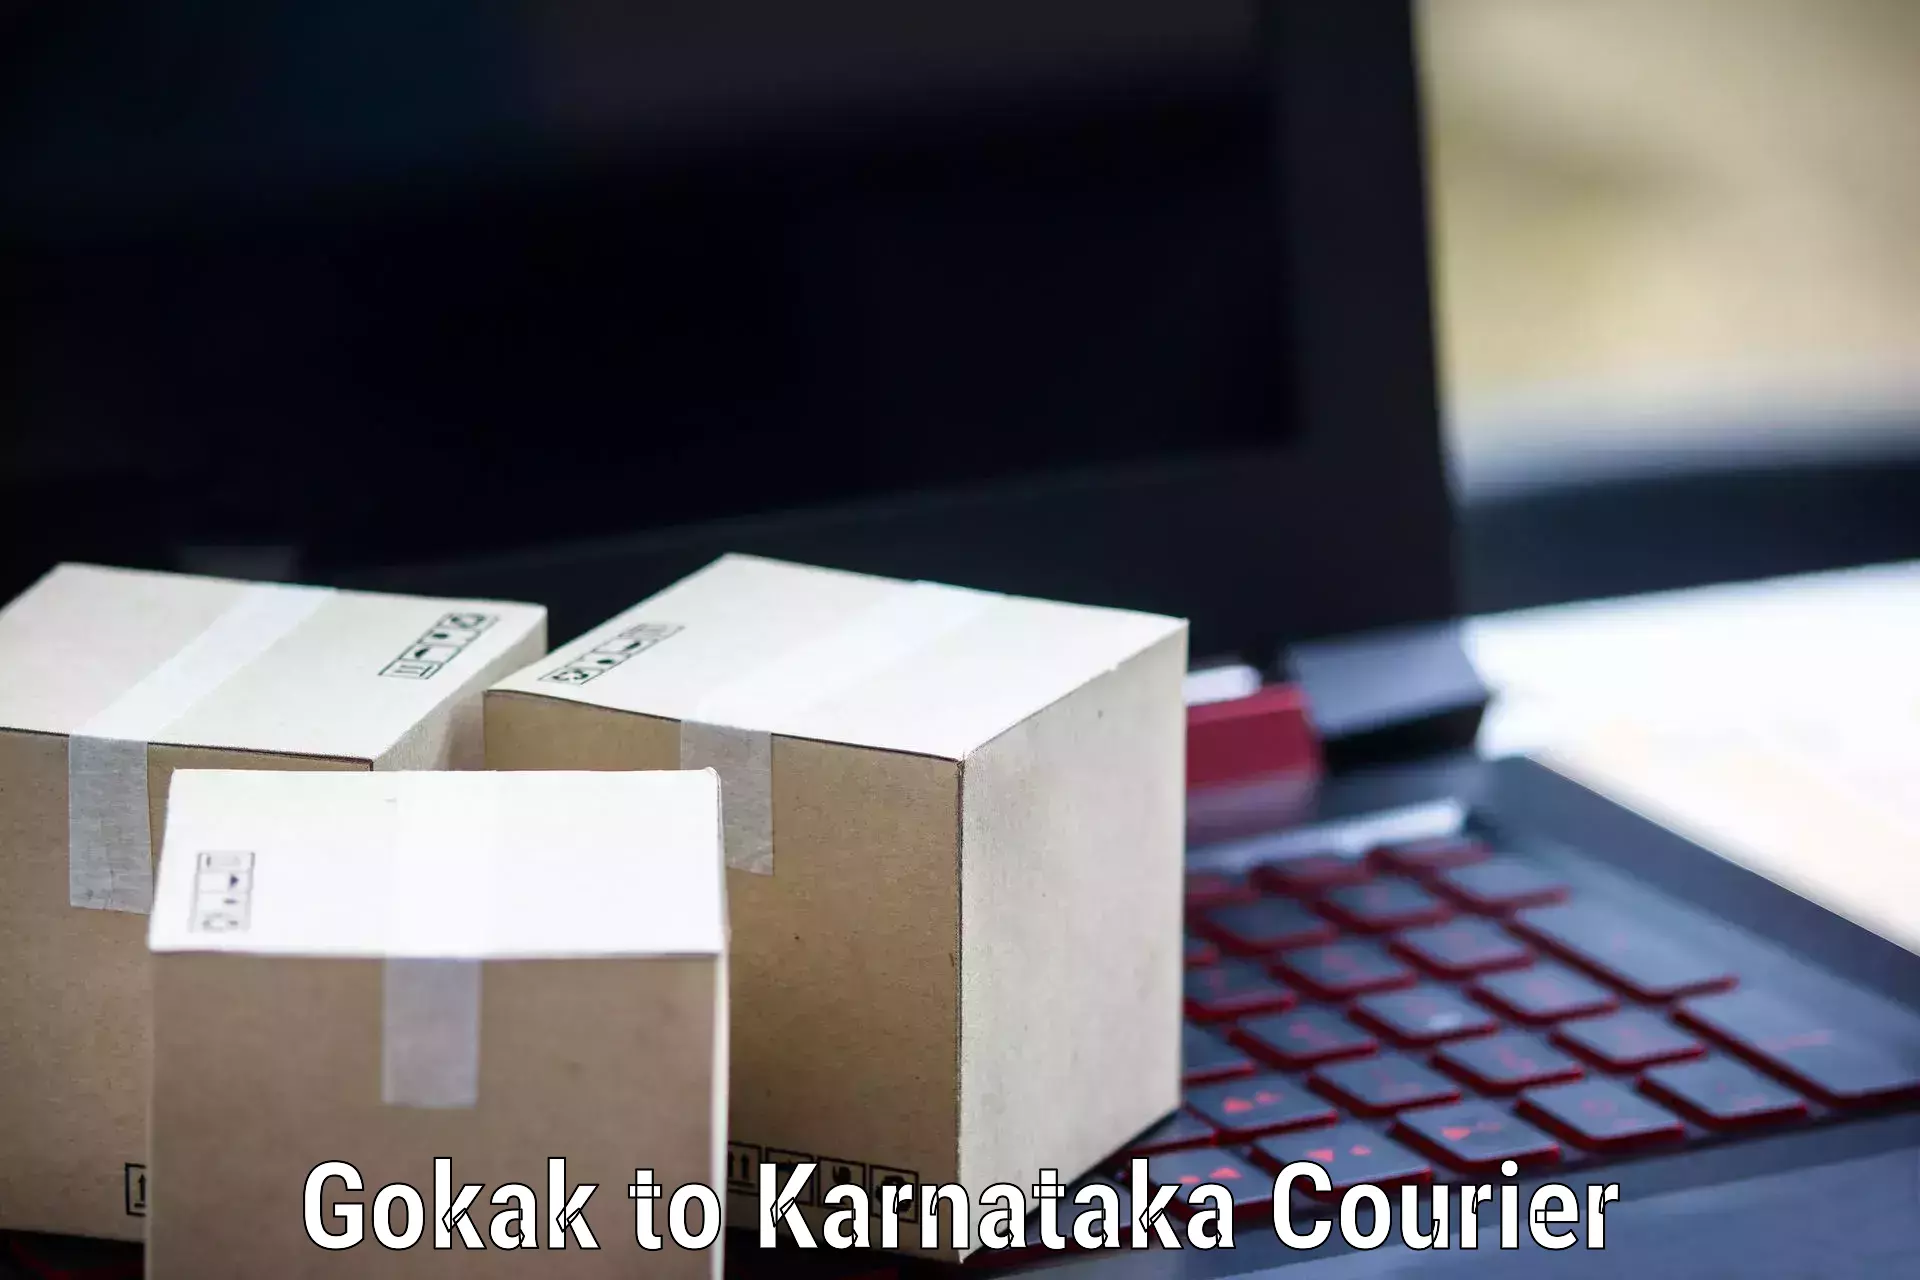 Quality courier services Gokak to Sindagi